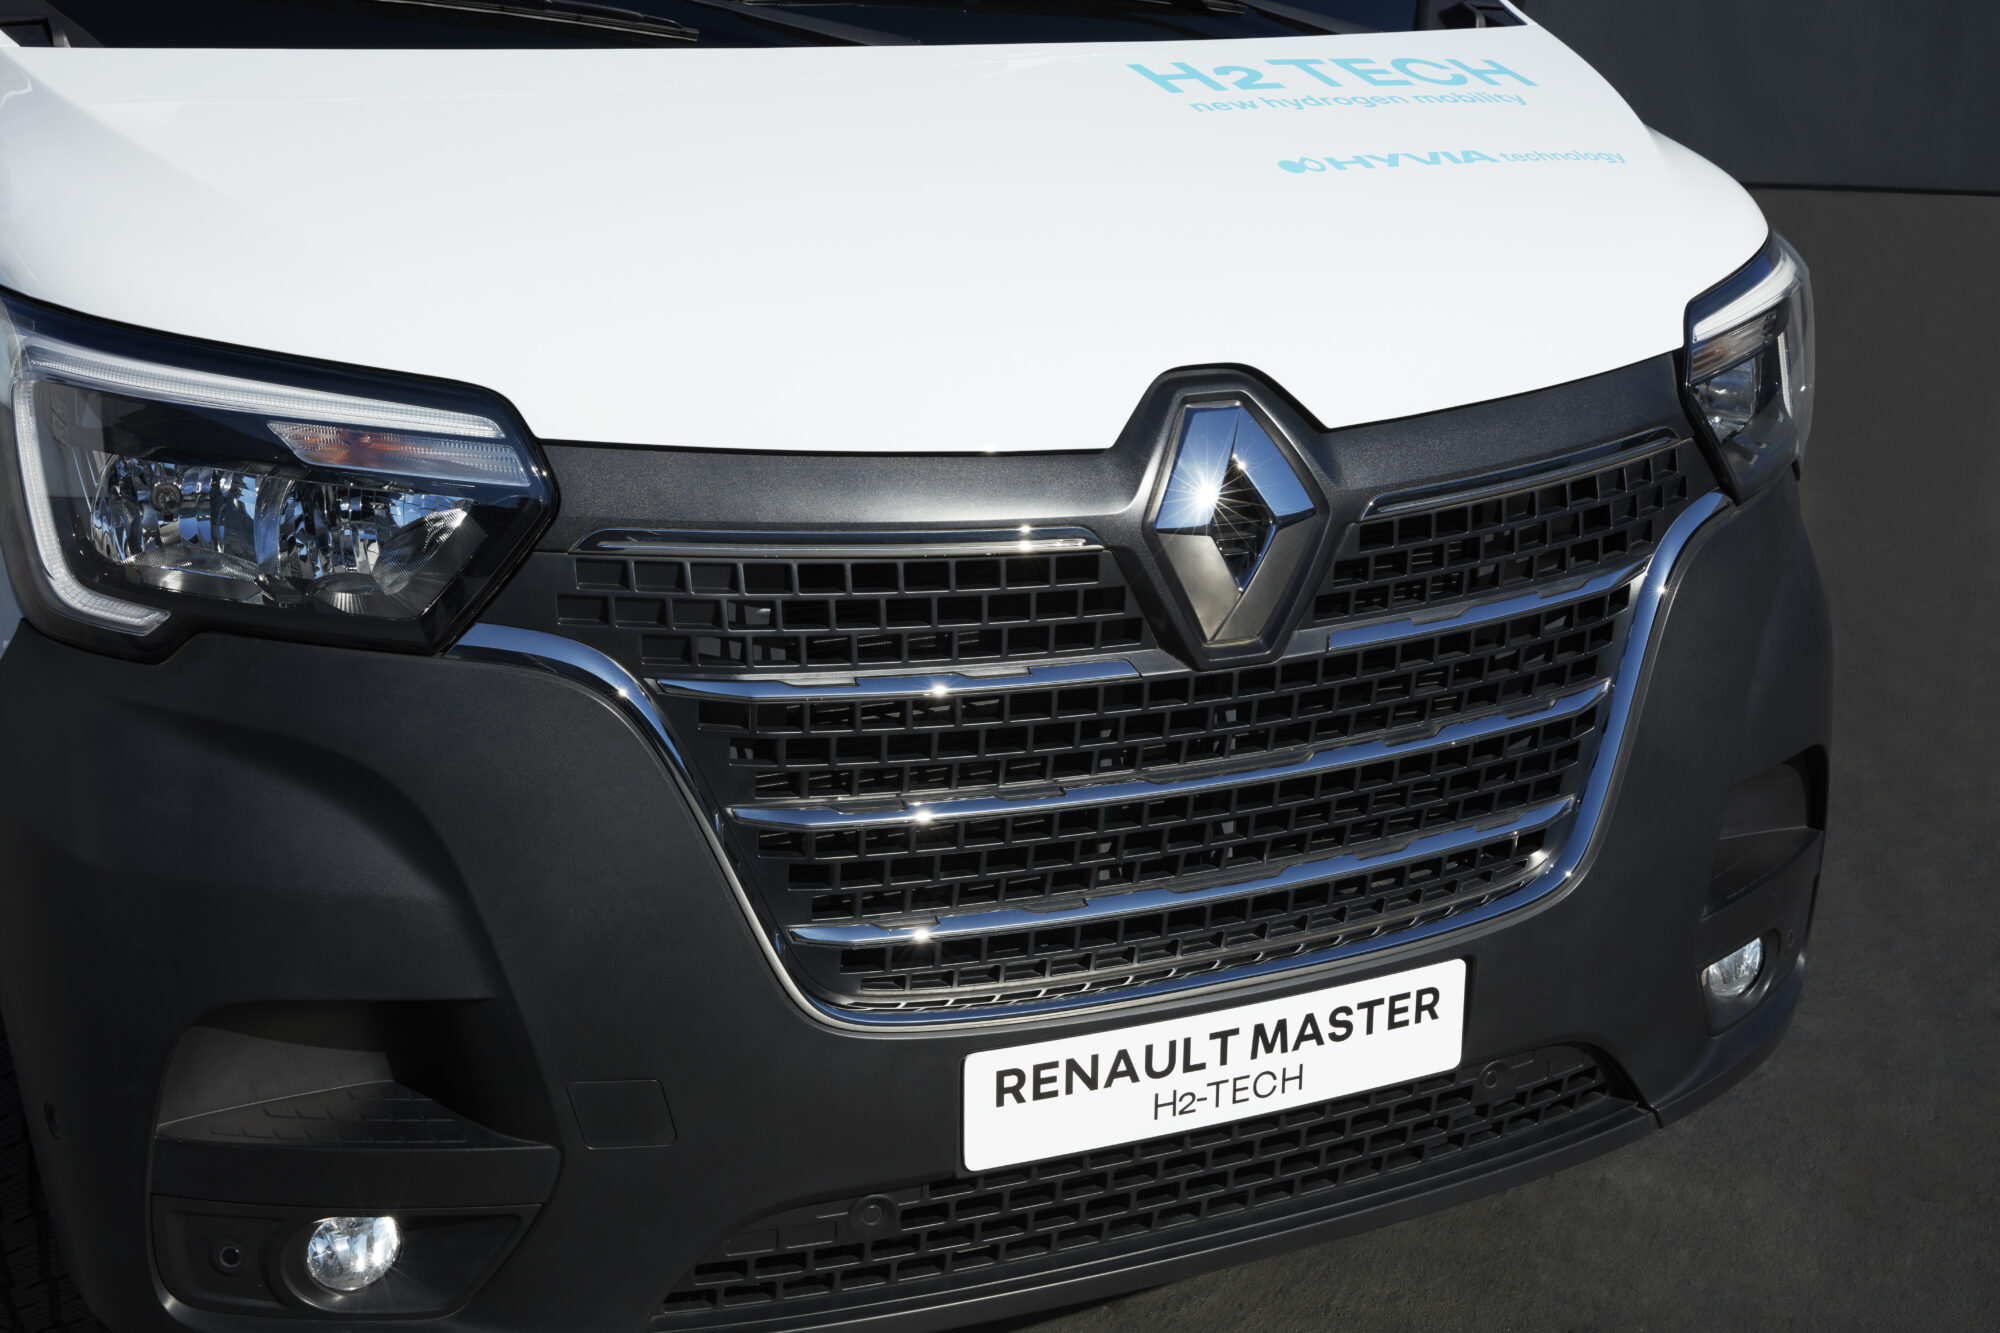 2021 - Renault Master Van H2-TECH Prototype.jpeg